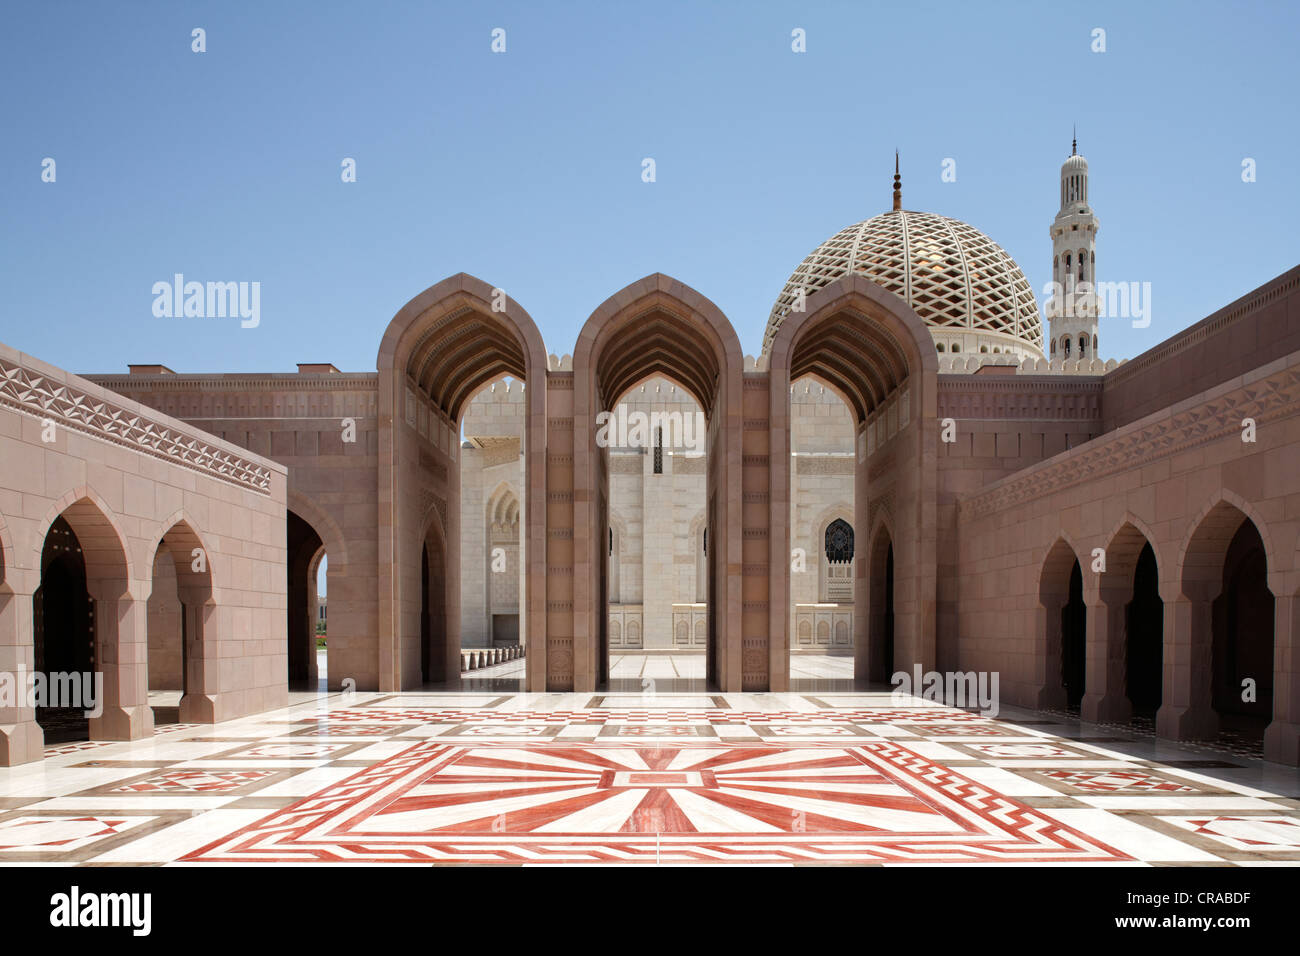 Cuadrado con arco apuntado, adornos, GATE, Minarete, Dome, la Gran Mezquita Sultan Qaboos, Muscat capital, Sultanato de Omán Foto de stock